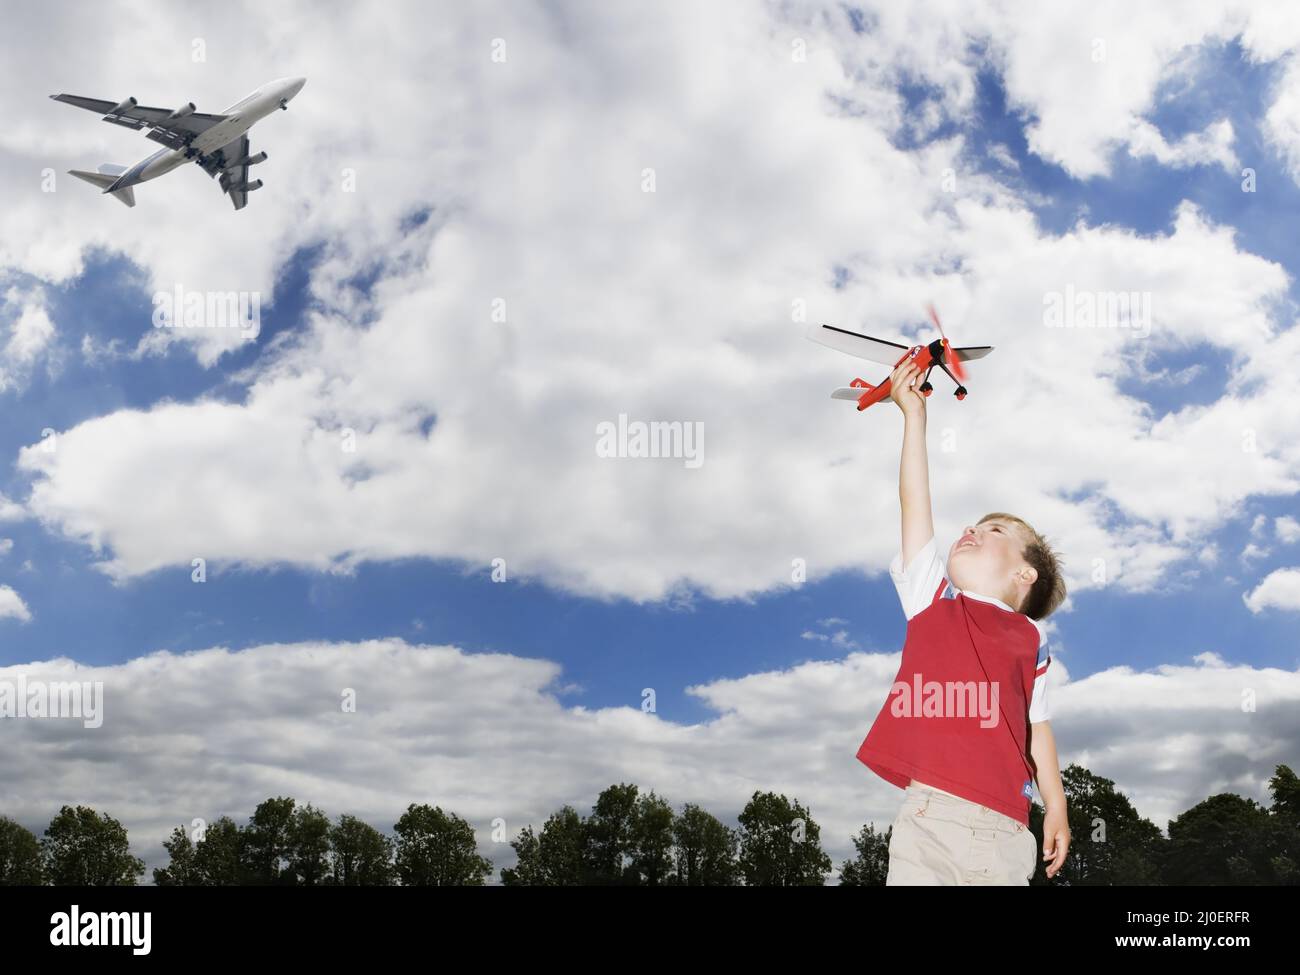 Niño caucásico joven jugando con un avión de juguete como un avión de pasajeros vuela temas de futuro im Foto de stock